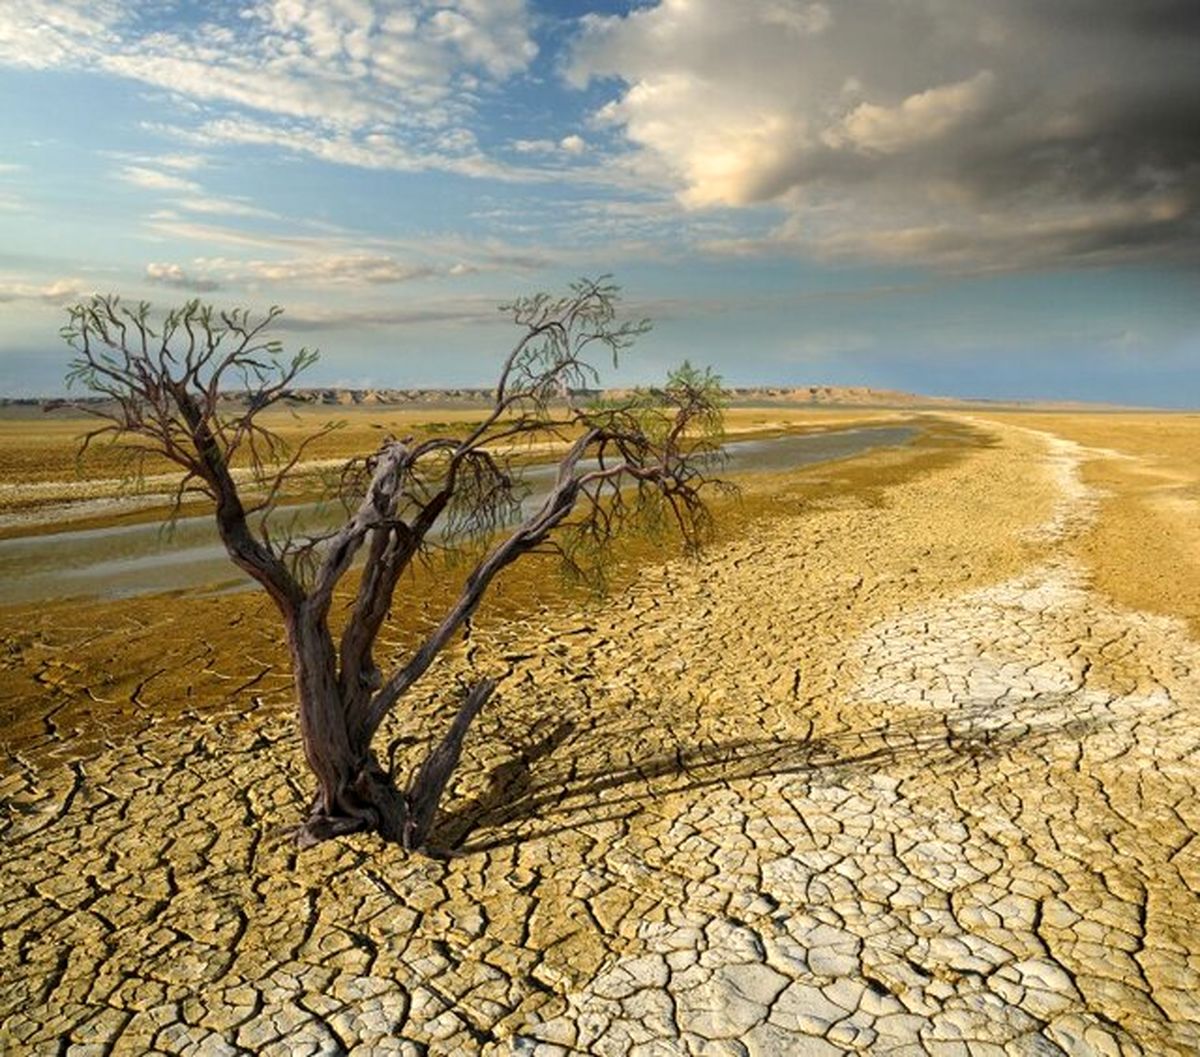 علت اصلی کم بارشی ها تغییر اقلیم است نه دخالت کشورها